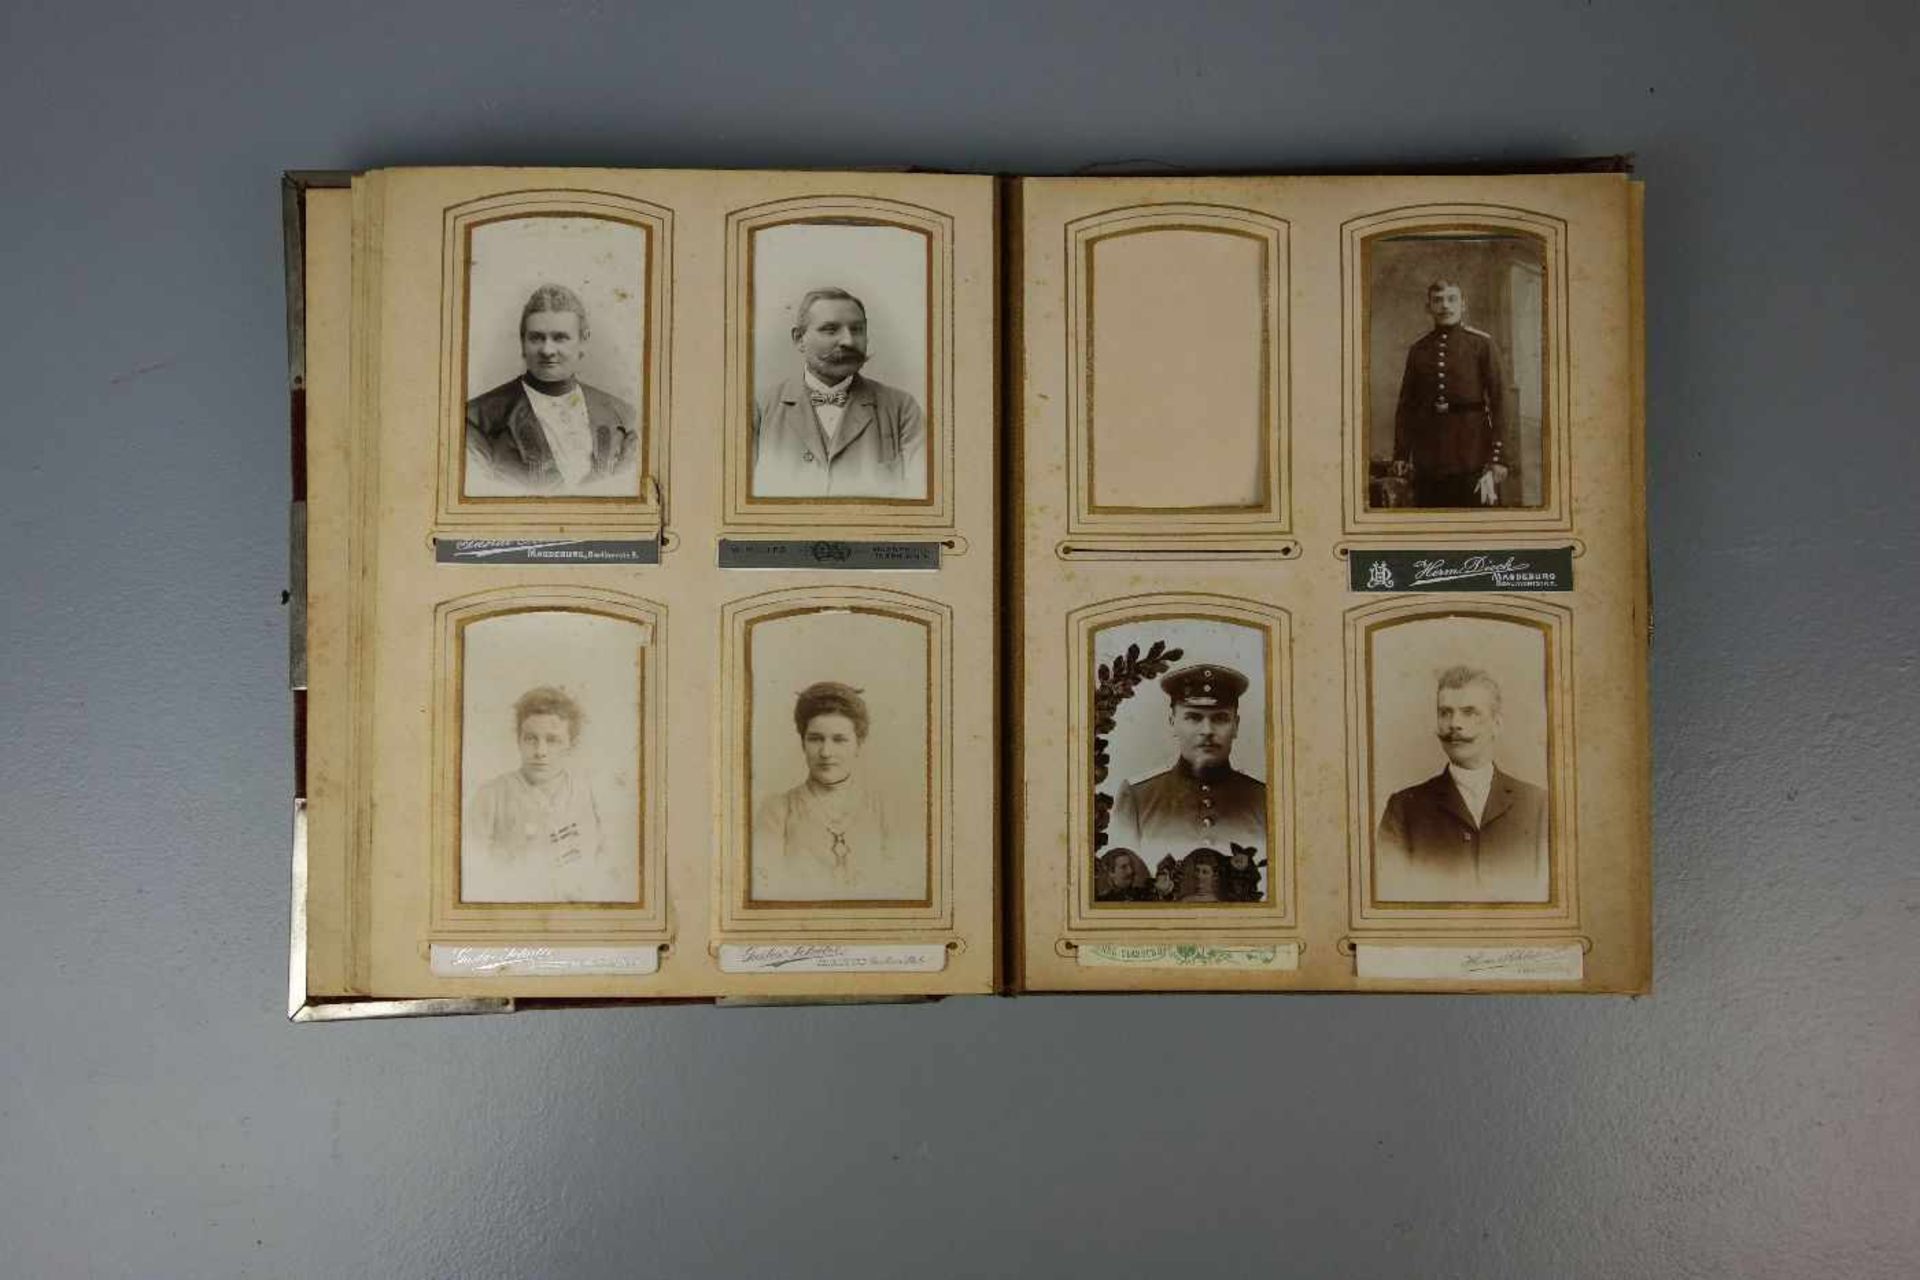 FOTOALBUM, um 1900, in rotem Samt gebunden, mit versilberten Metallapplikationen auf dem Buchdeckel. - Bild 2 aus 3